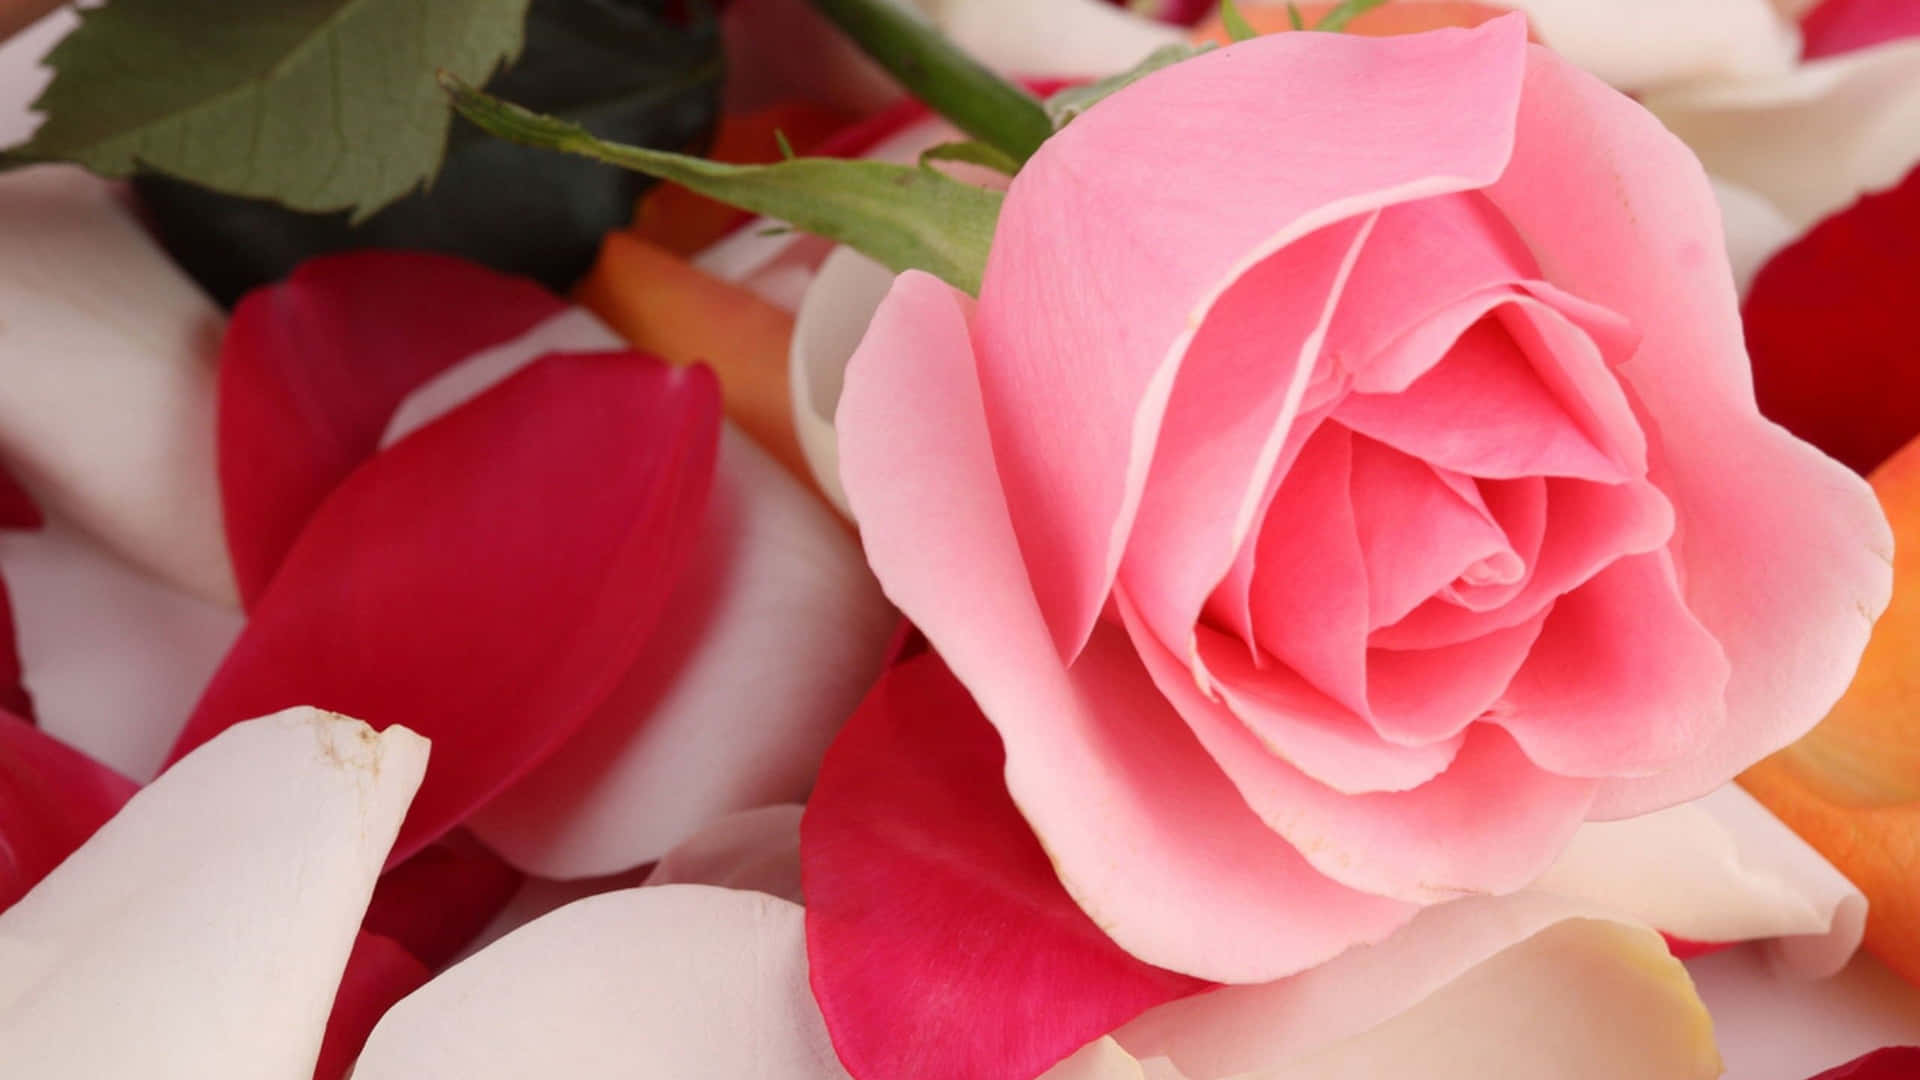 Forskellige lyserøde roser i en livlig naturlig indstilling.